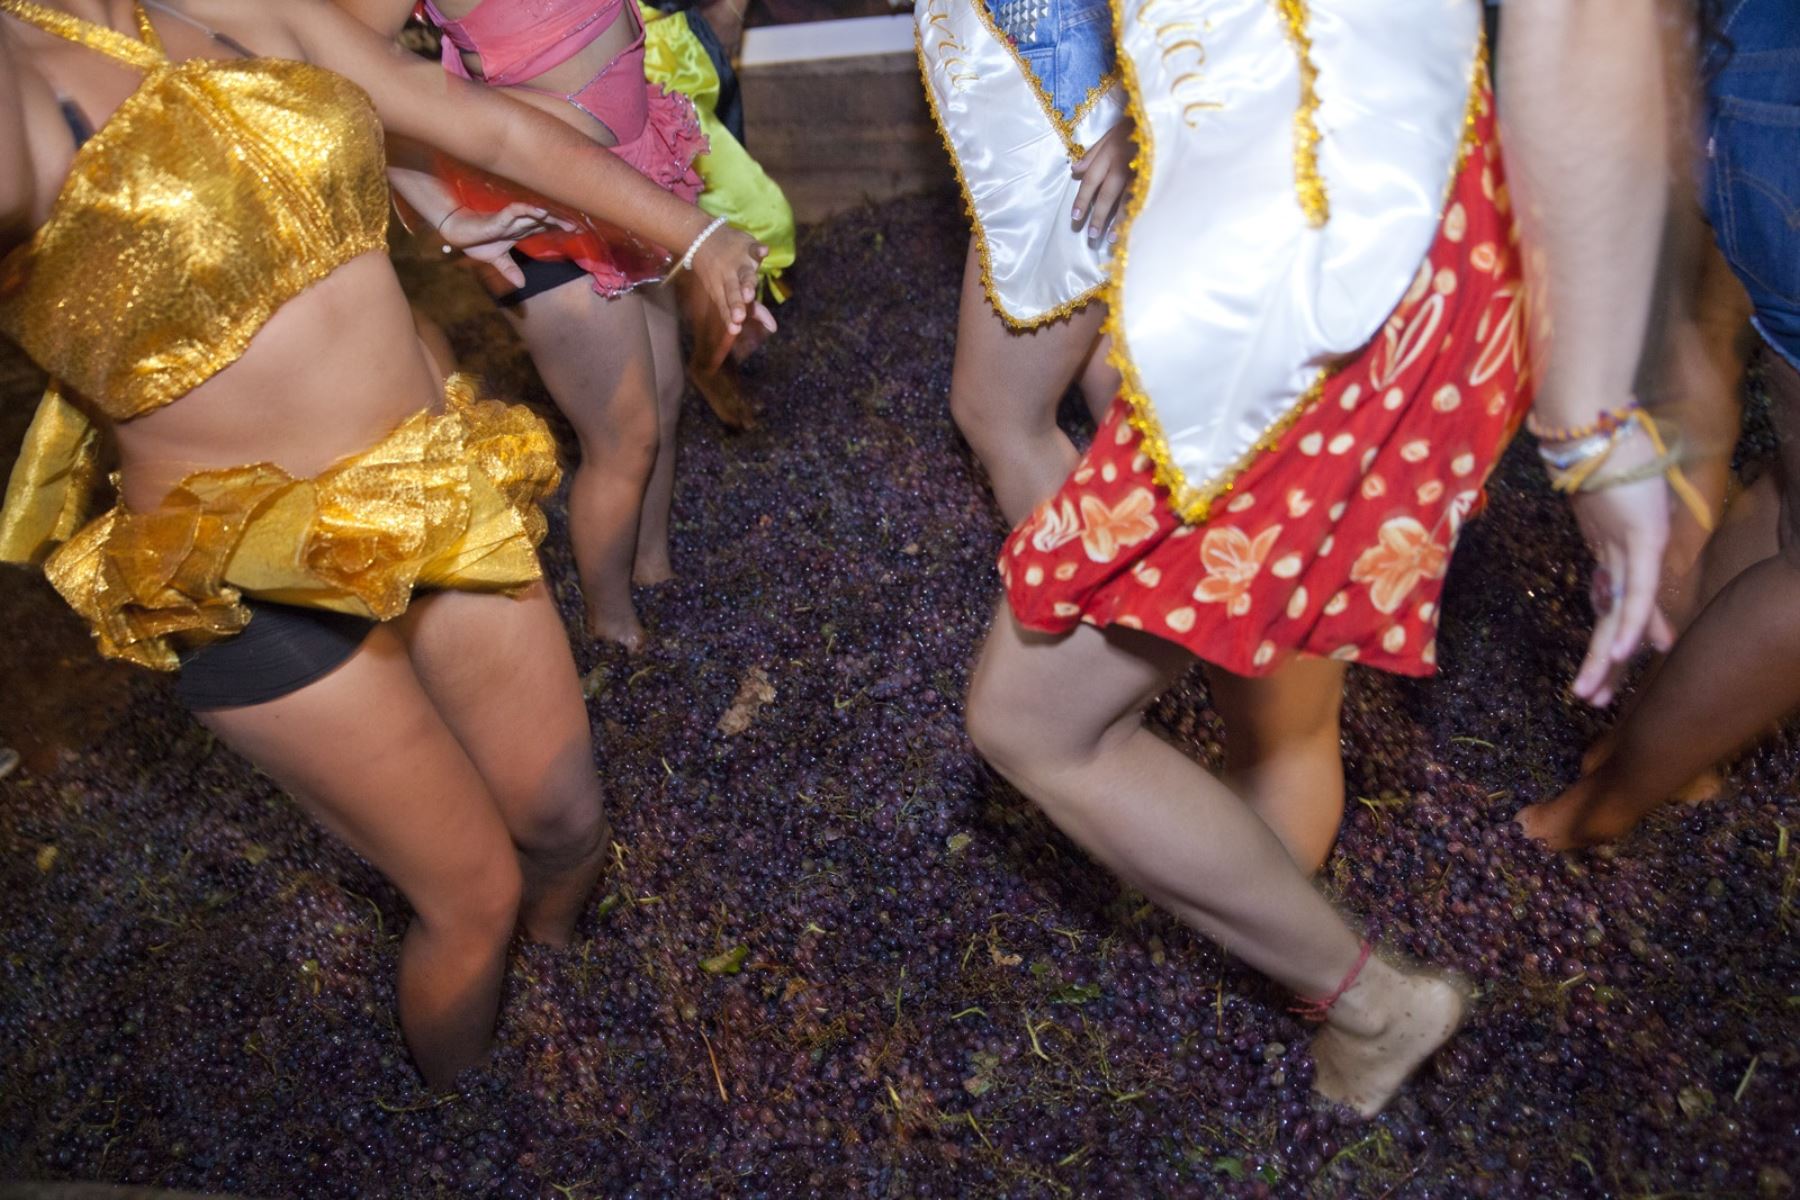 Con la tradicional pisa de uvas las bodegas vitivinícolas de Ica celebran esta semana la Fiesta de la Vendimia, una de las festividades más importantes del calendario festivo iqueño y que congrega a cientos de turistas. Foto: Promperú/Adrián Portugal